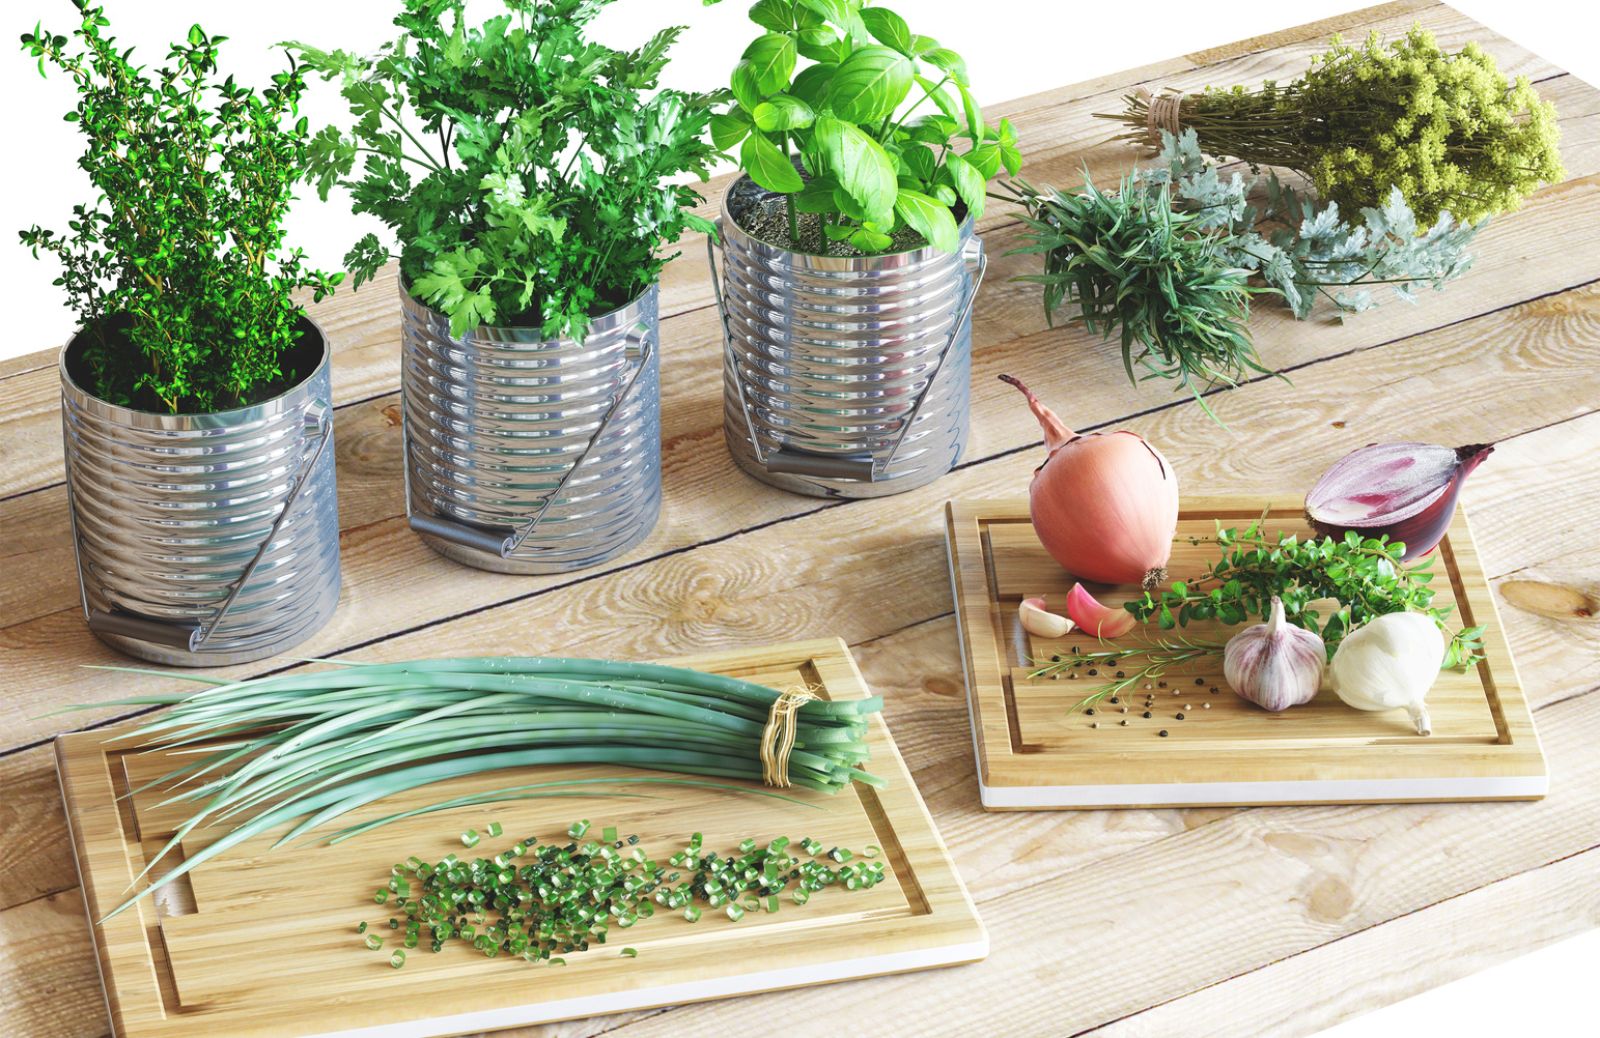 Come decorare la cucina con le erbe aromatiche: le idee da copiare 